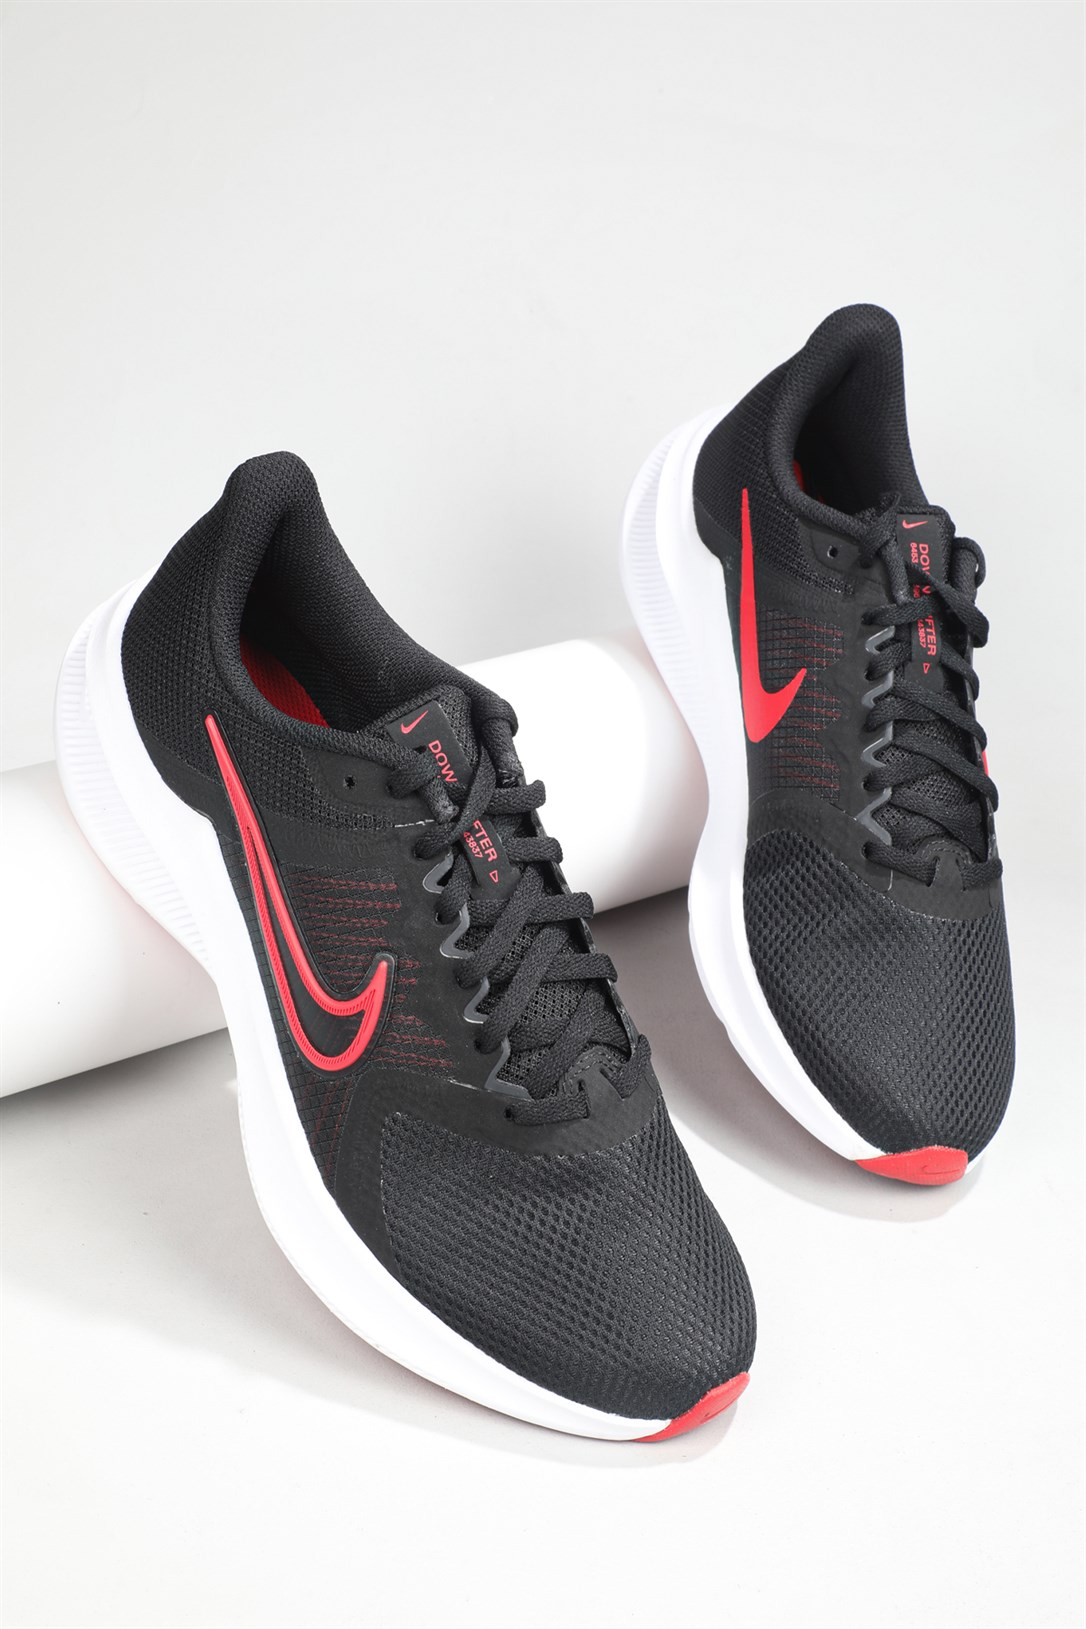 Nike Günlük Nefes Alır Siyah Kırmızı Erkek Spor Ayakkabı CW3411-005 |  Ayakkabı City